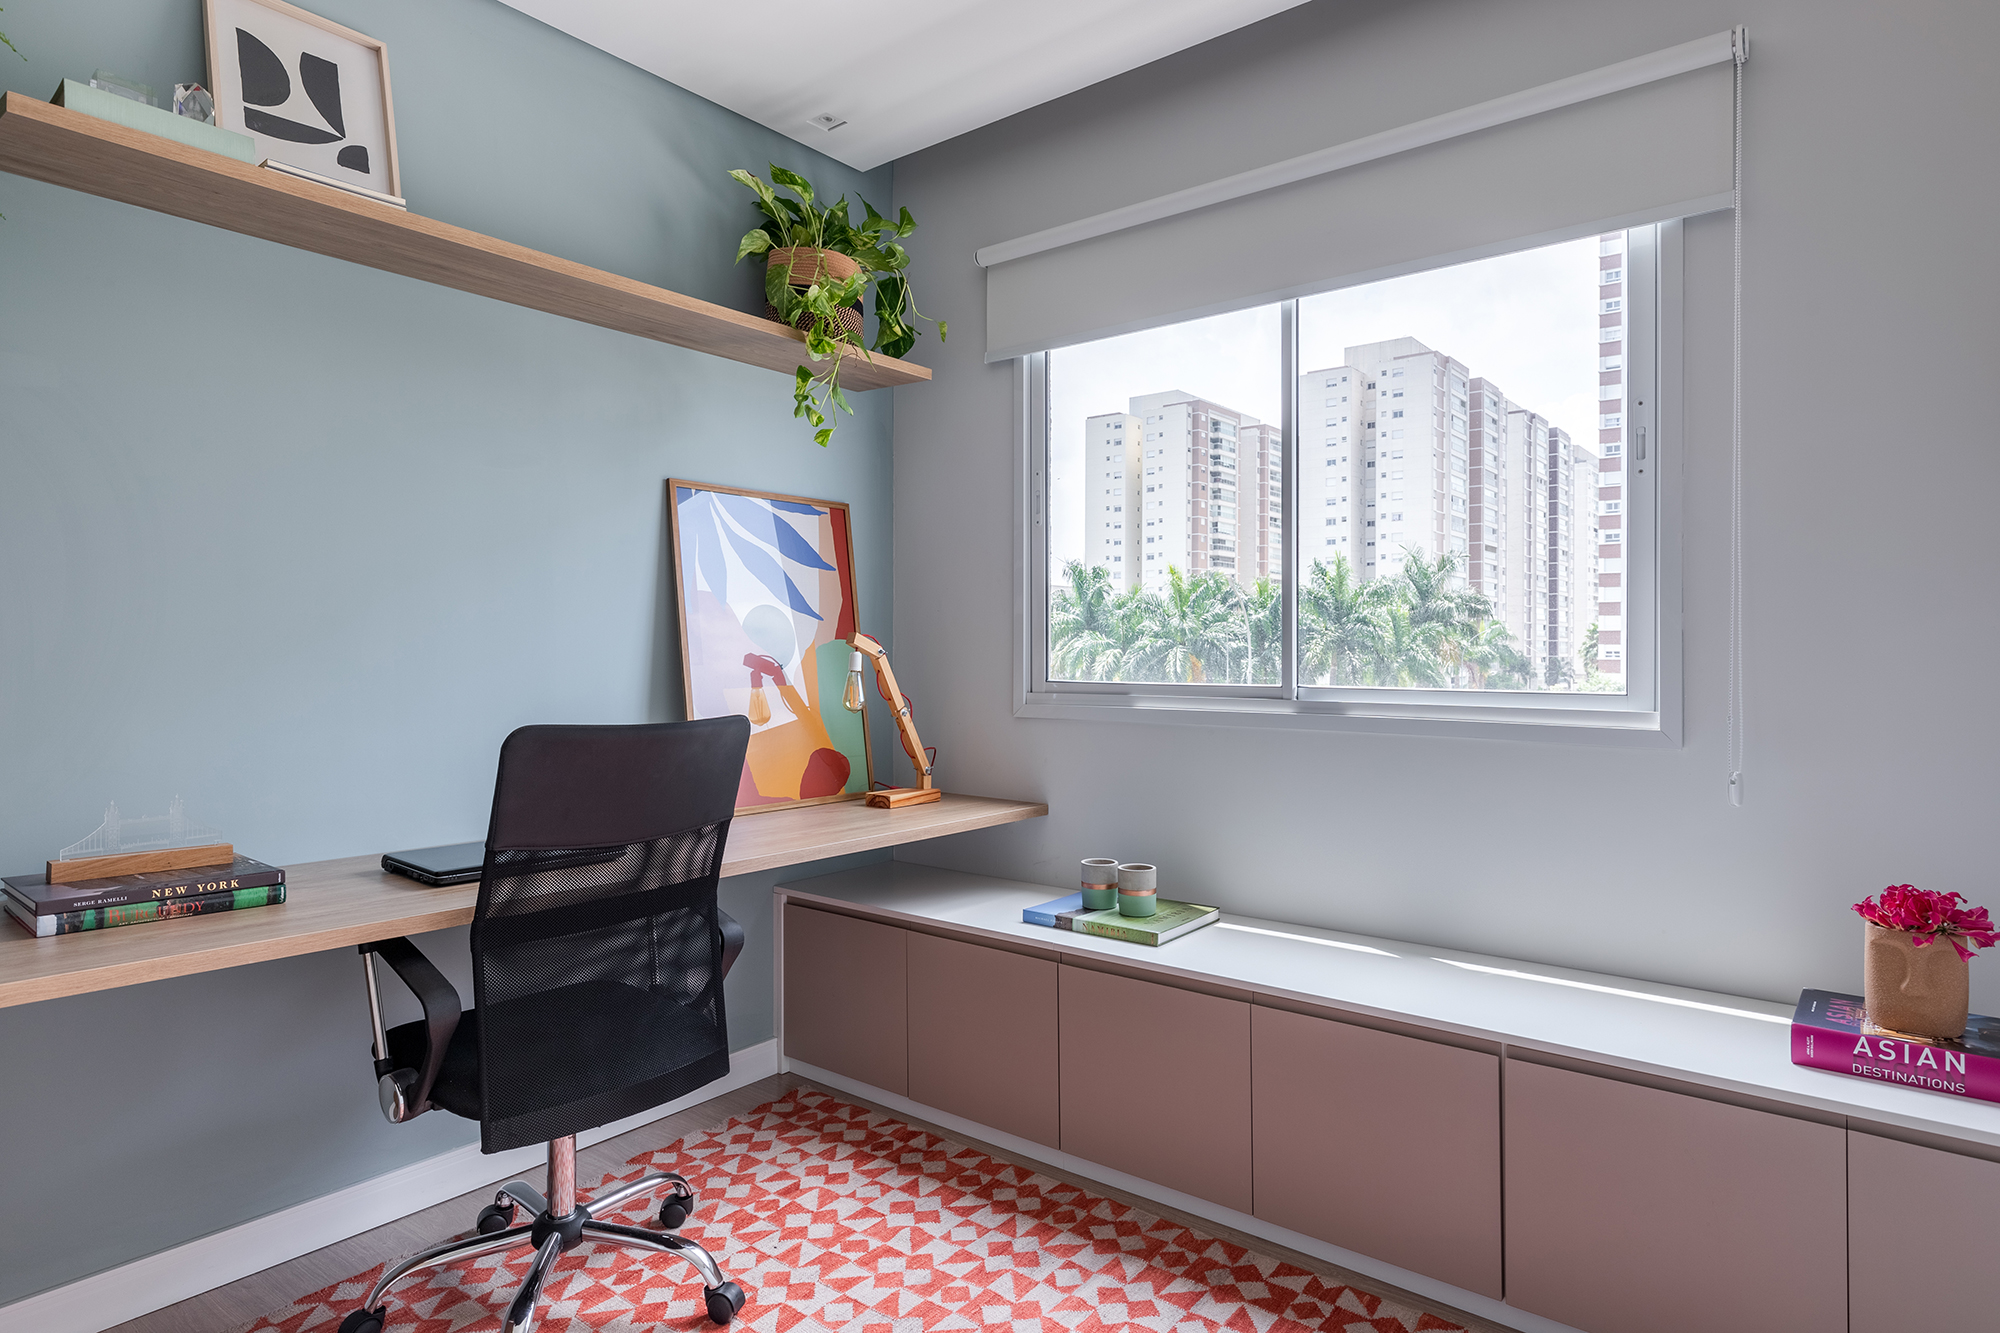 Cozinha verde e granilite no banheiro marca apartamento de 58 m². Projeto de Pixel Arquitetura. Na foto, home office com bancada integrada ao armário. Tapete com estampa geométrica.